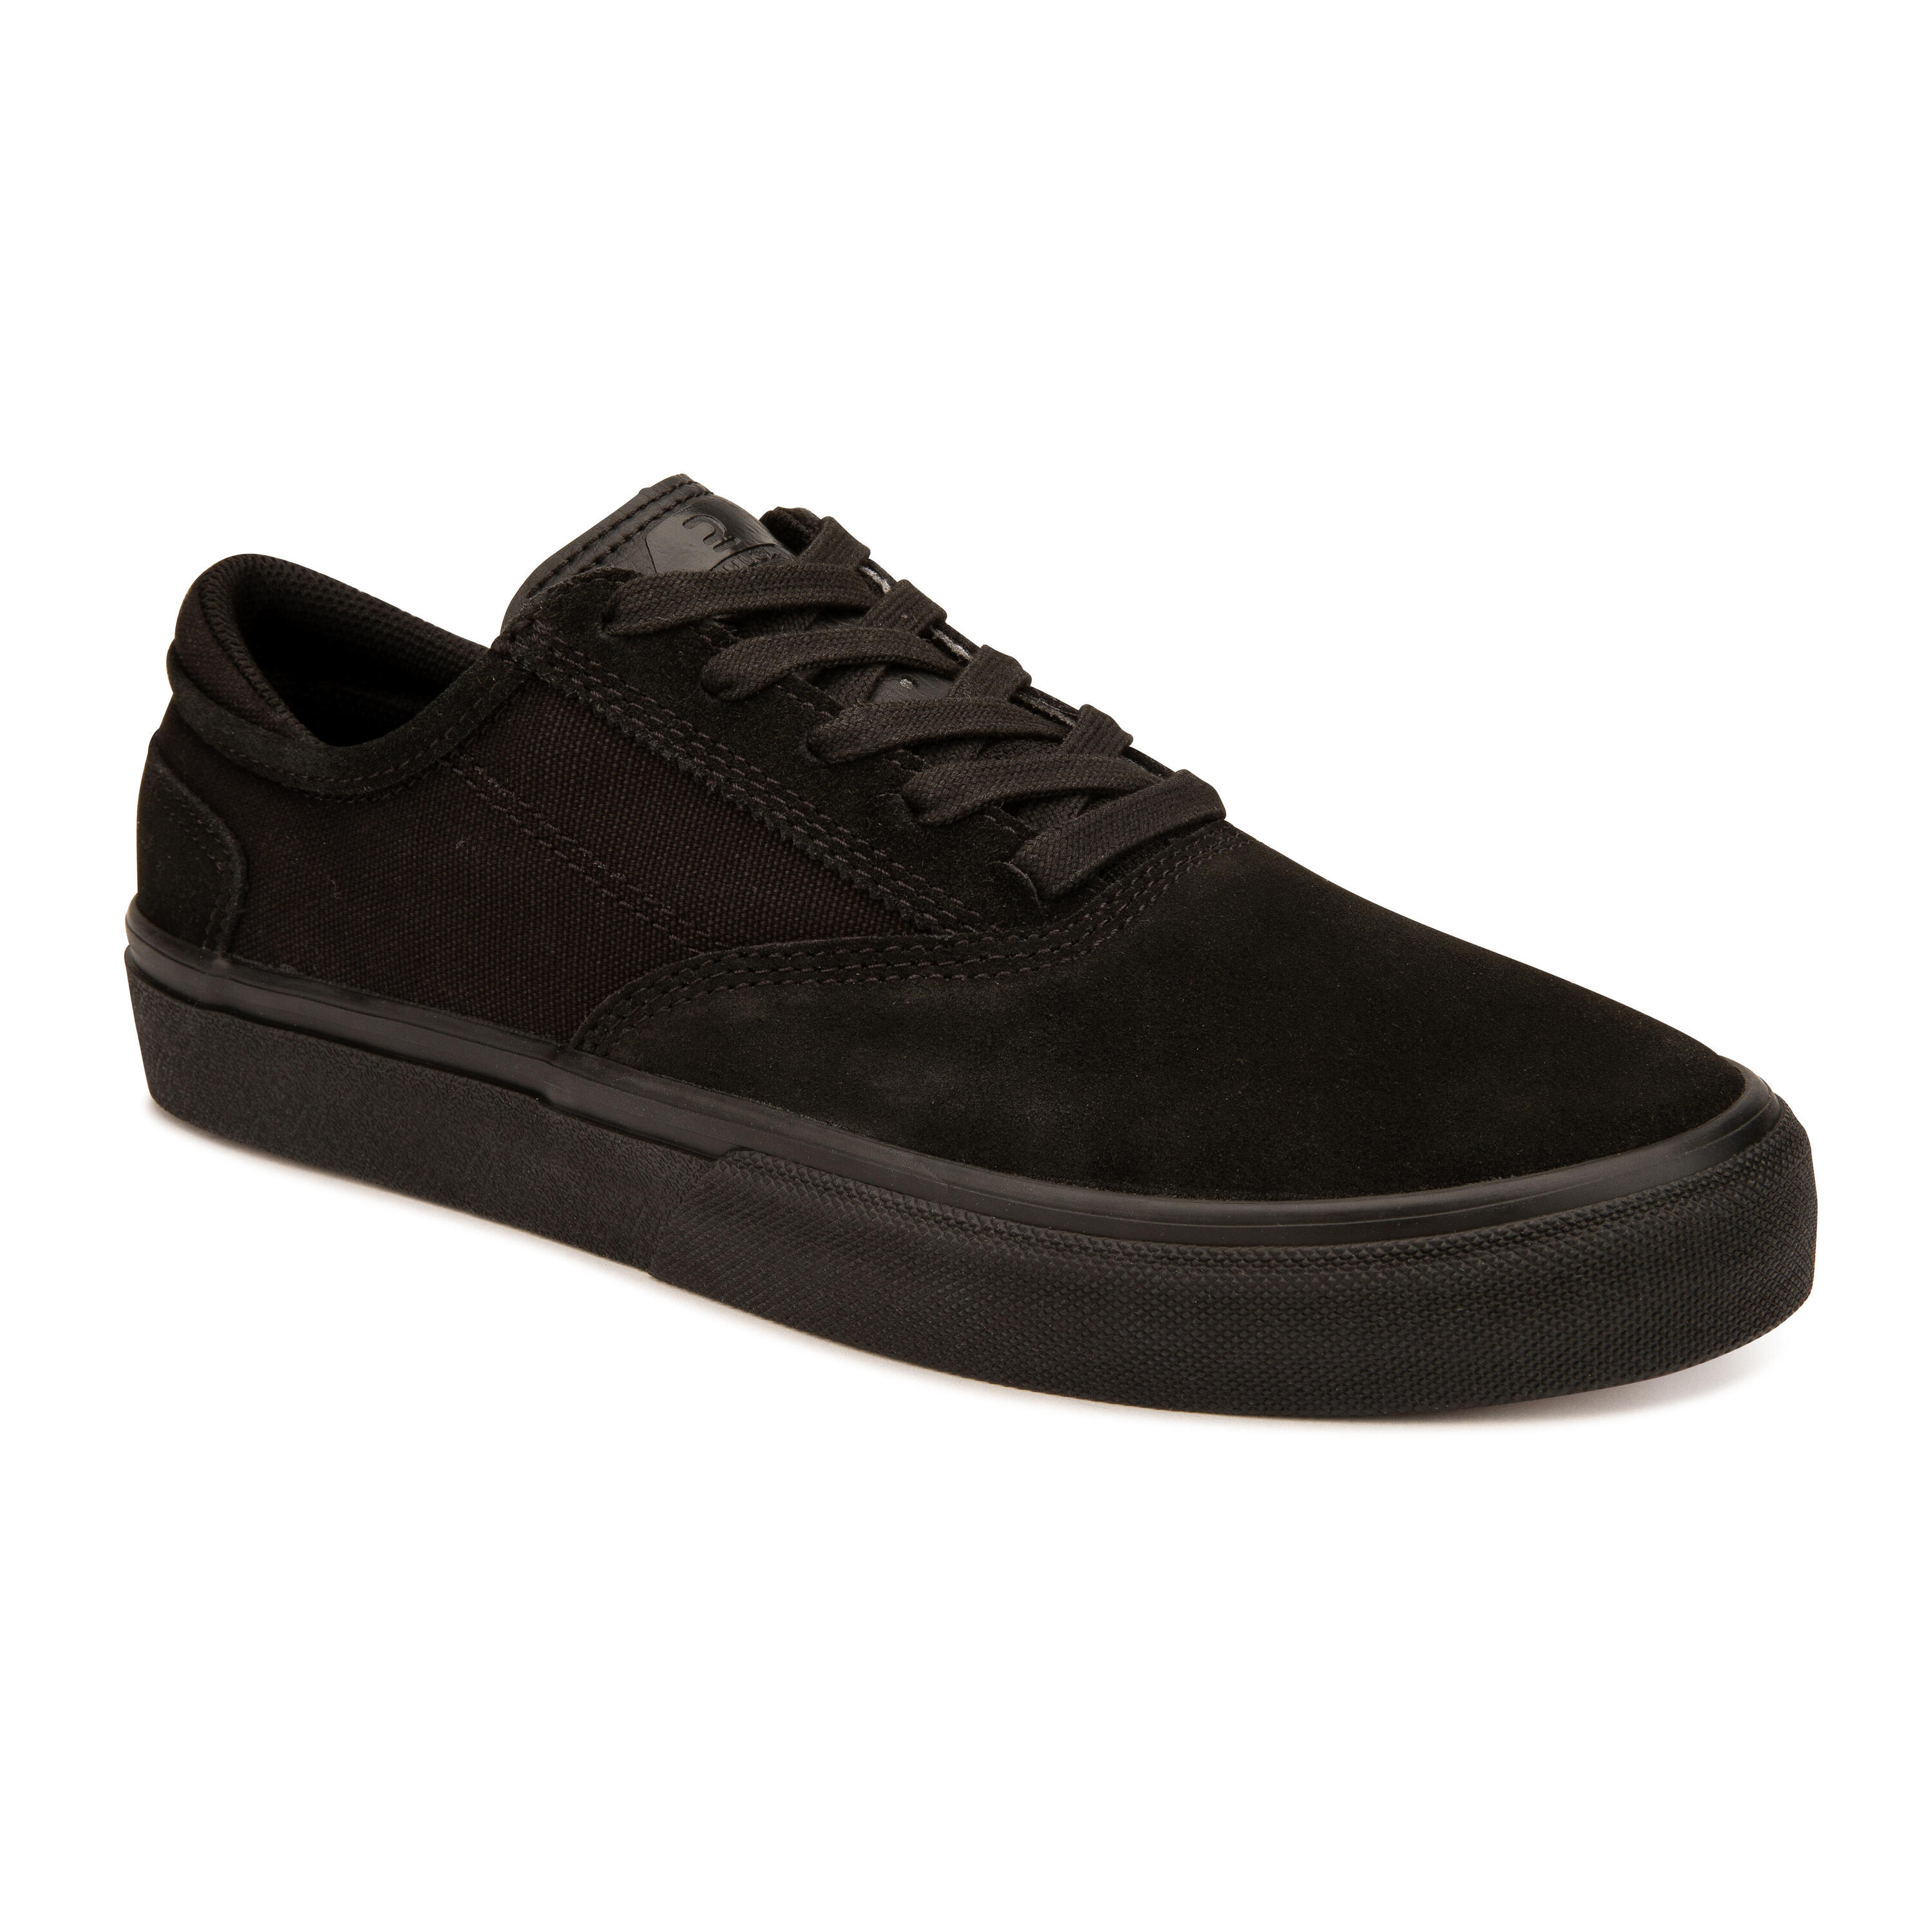 Adult Vulcanised Skate Shoes Vulca 500 II - Black/Black 1/17